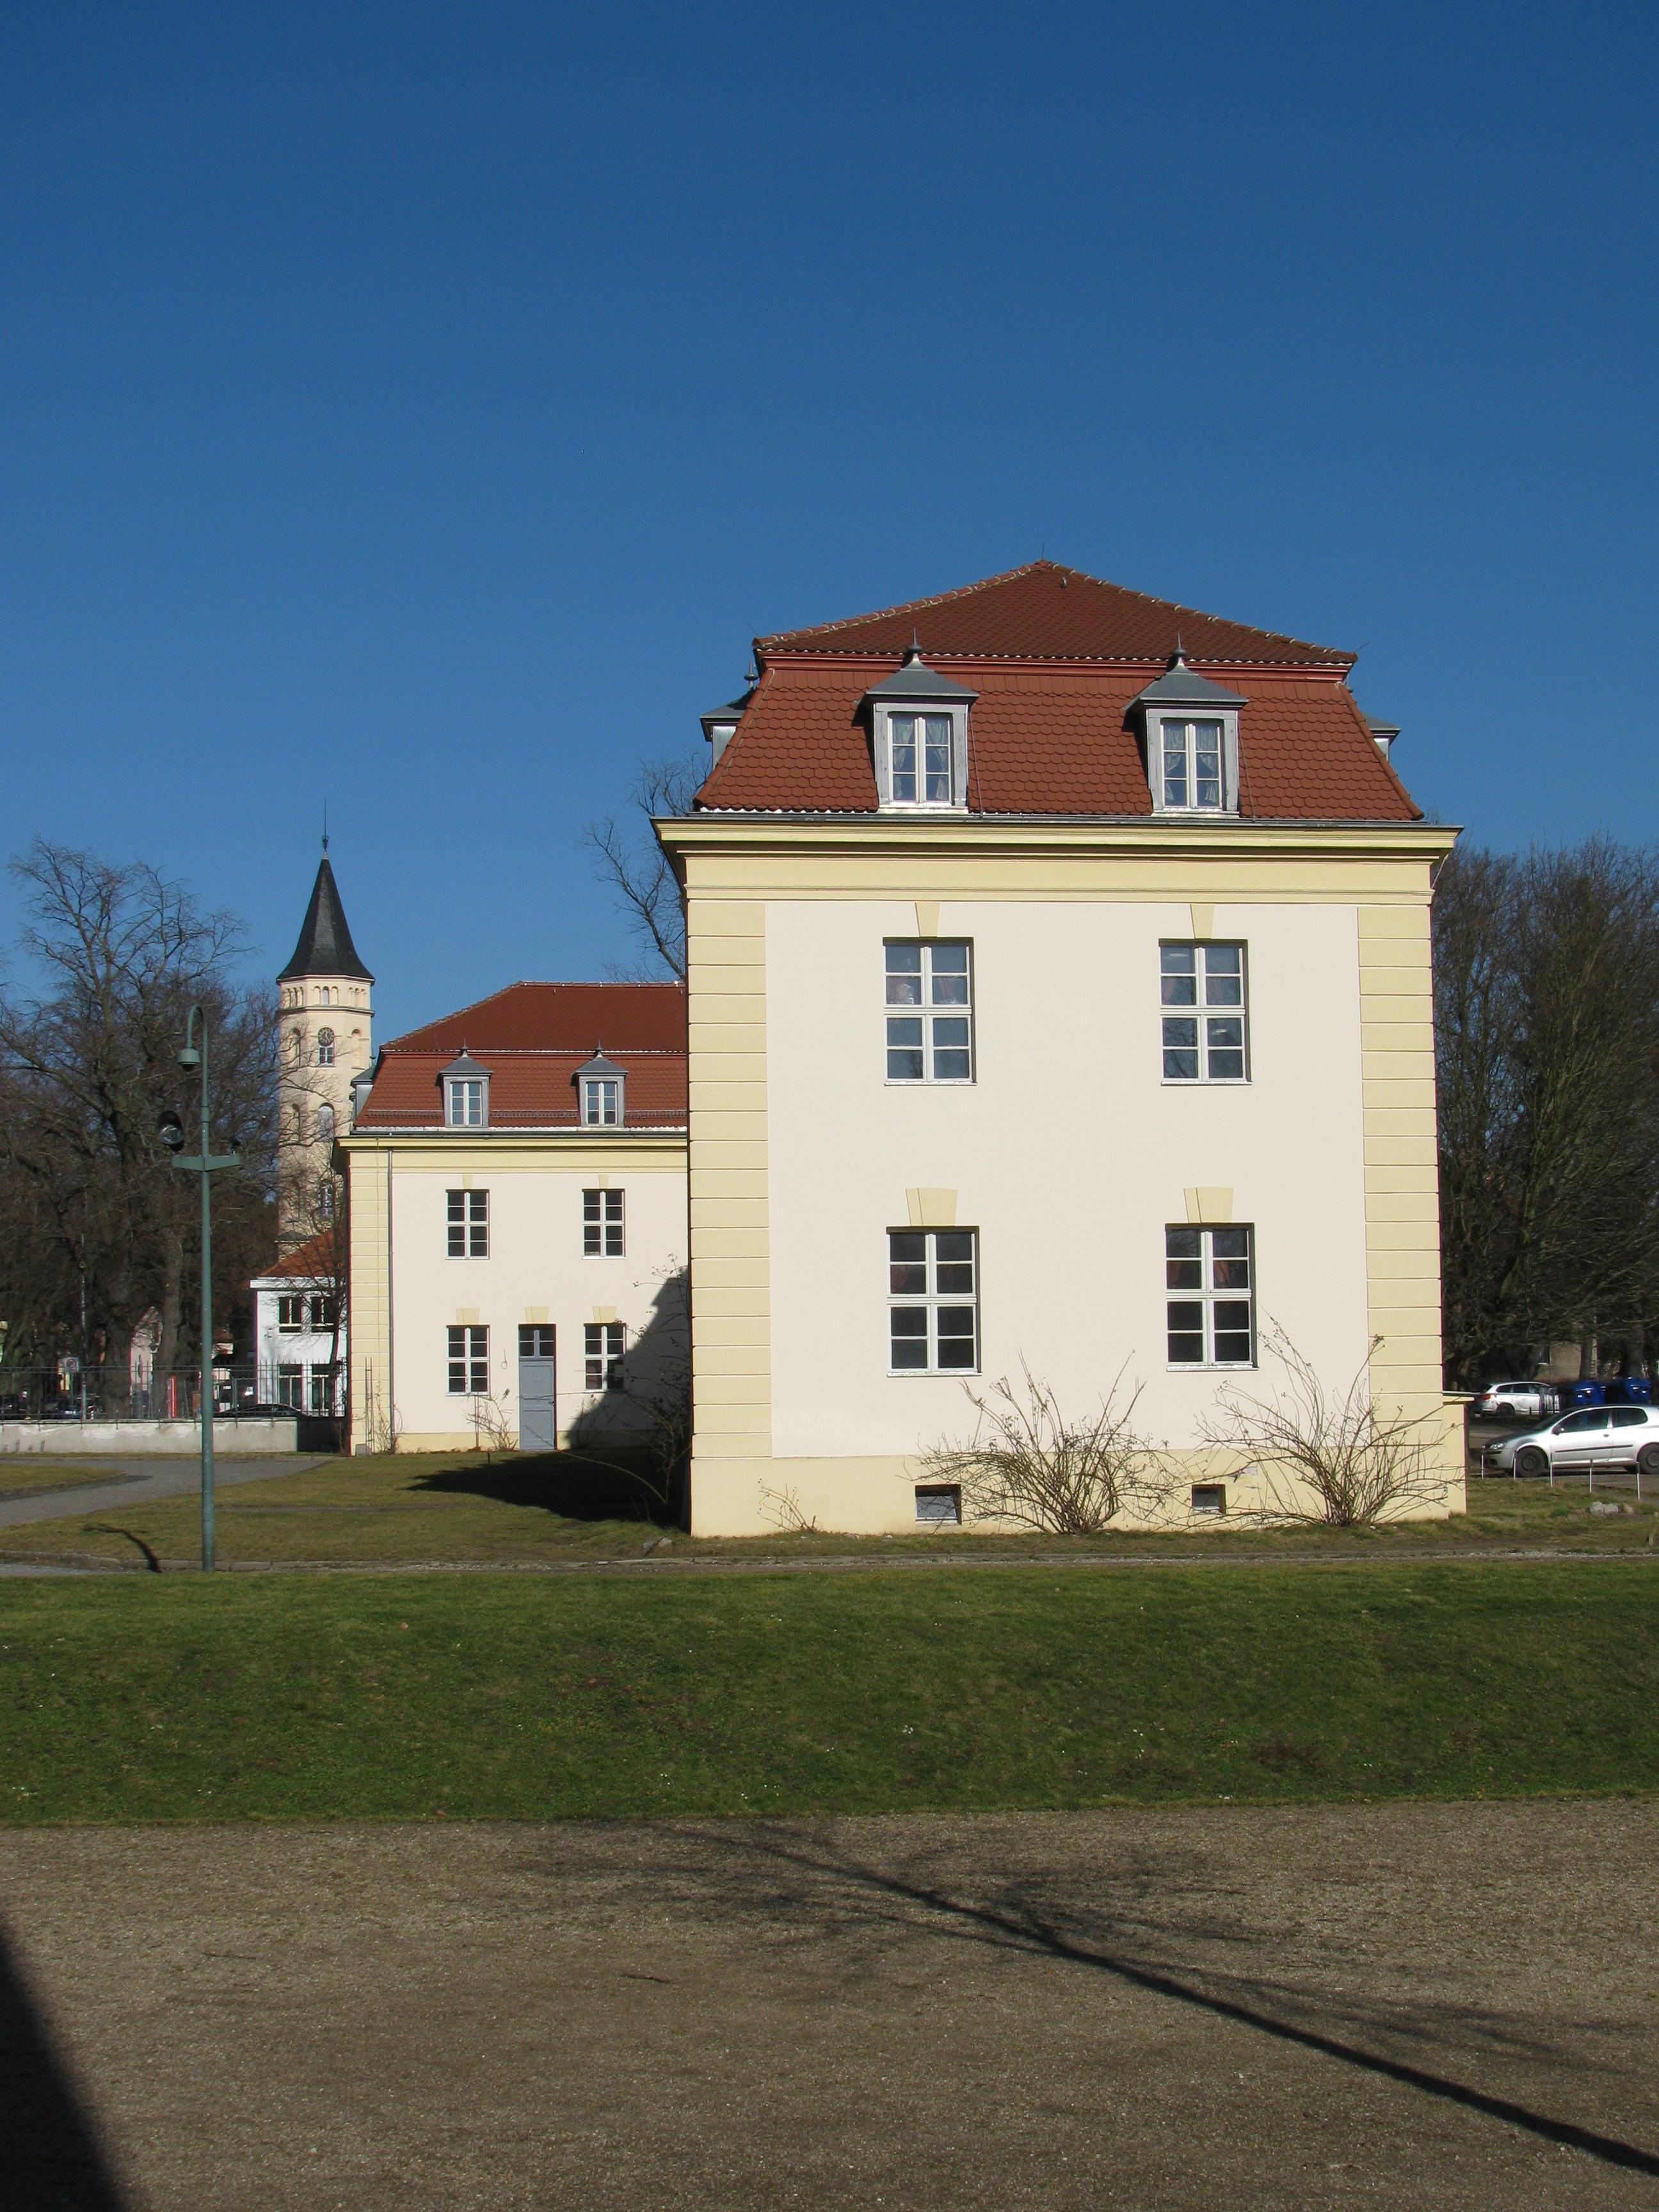 Rechtes Hofgebäude dort mit der evangelischen Kirche hinten. Schlosspark.